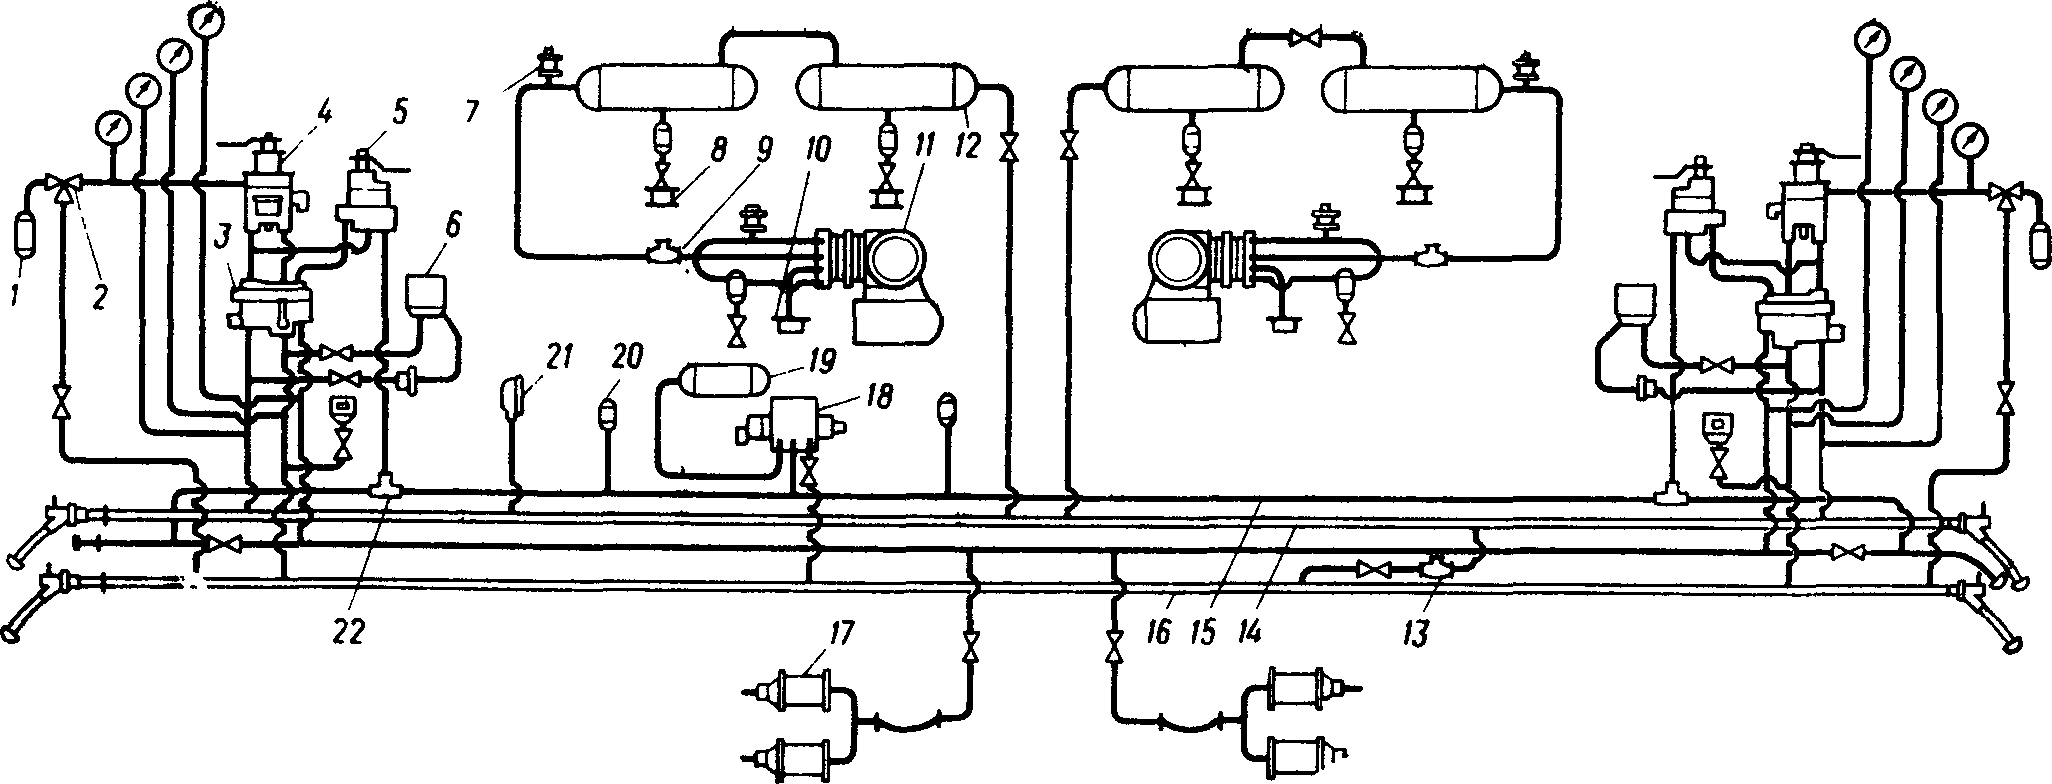 Схема тормозного оборудования электровоза ВЛ60К